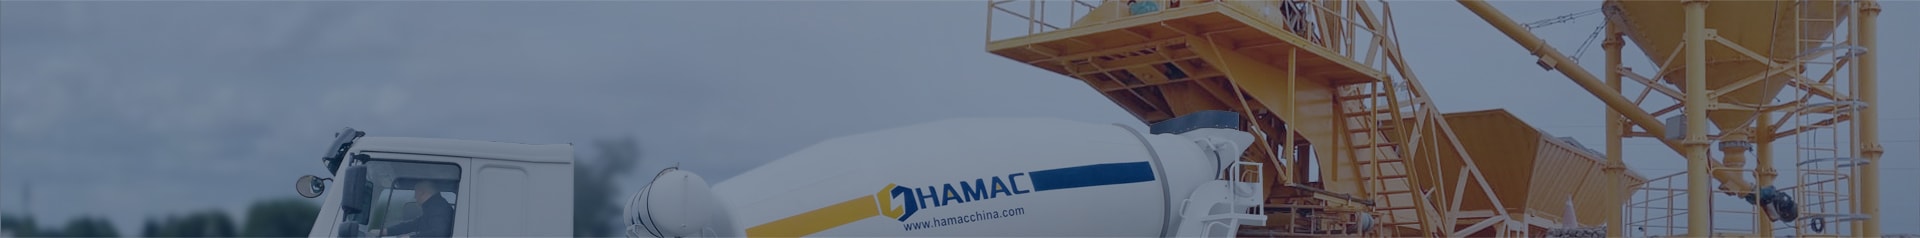 HAMAC Concrete Mixing Plant Article Banner